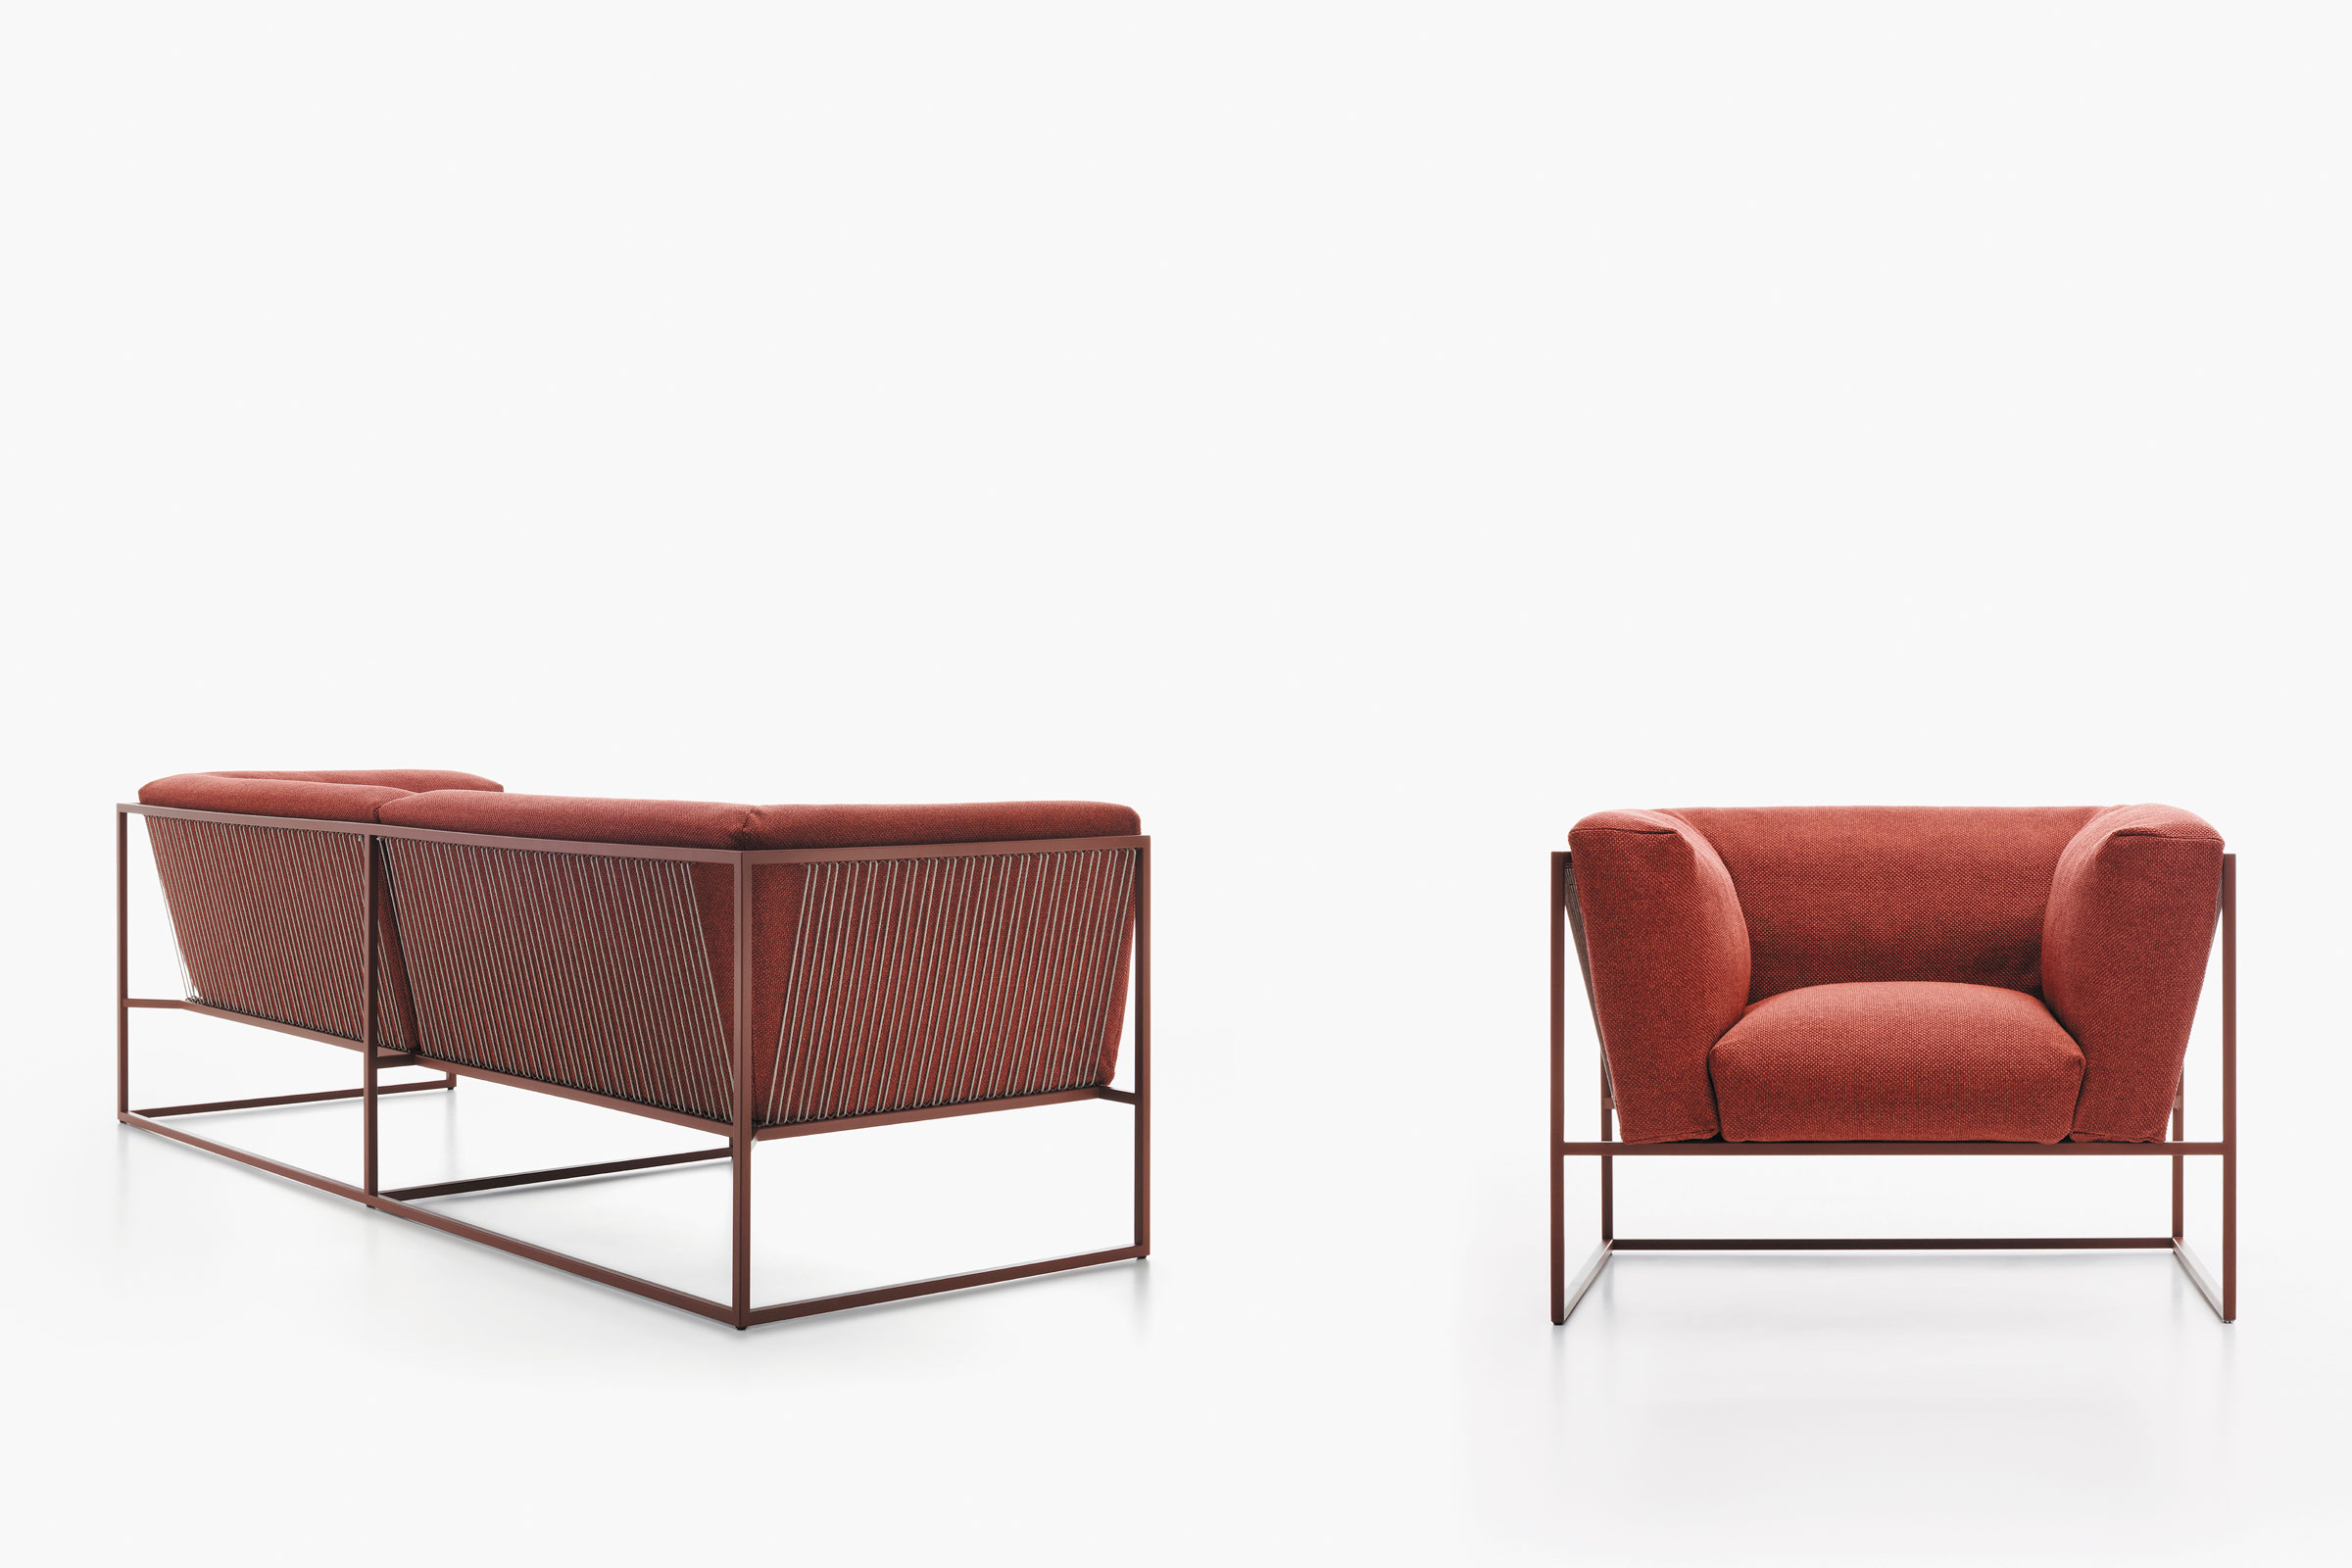 hauser-design-mdf-italia-sofa-arpa-in-terracotta